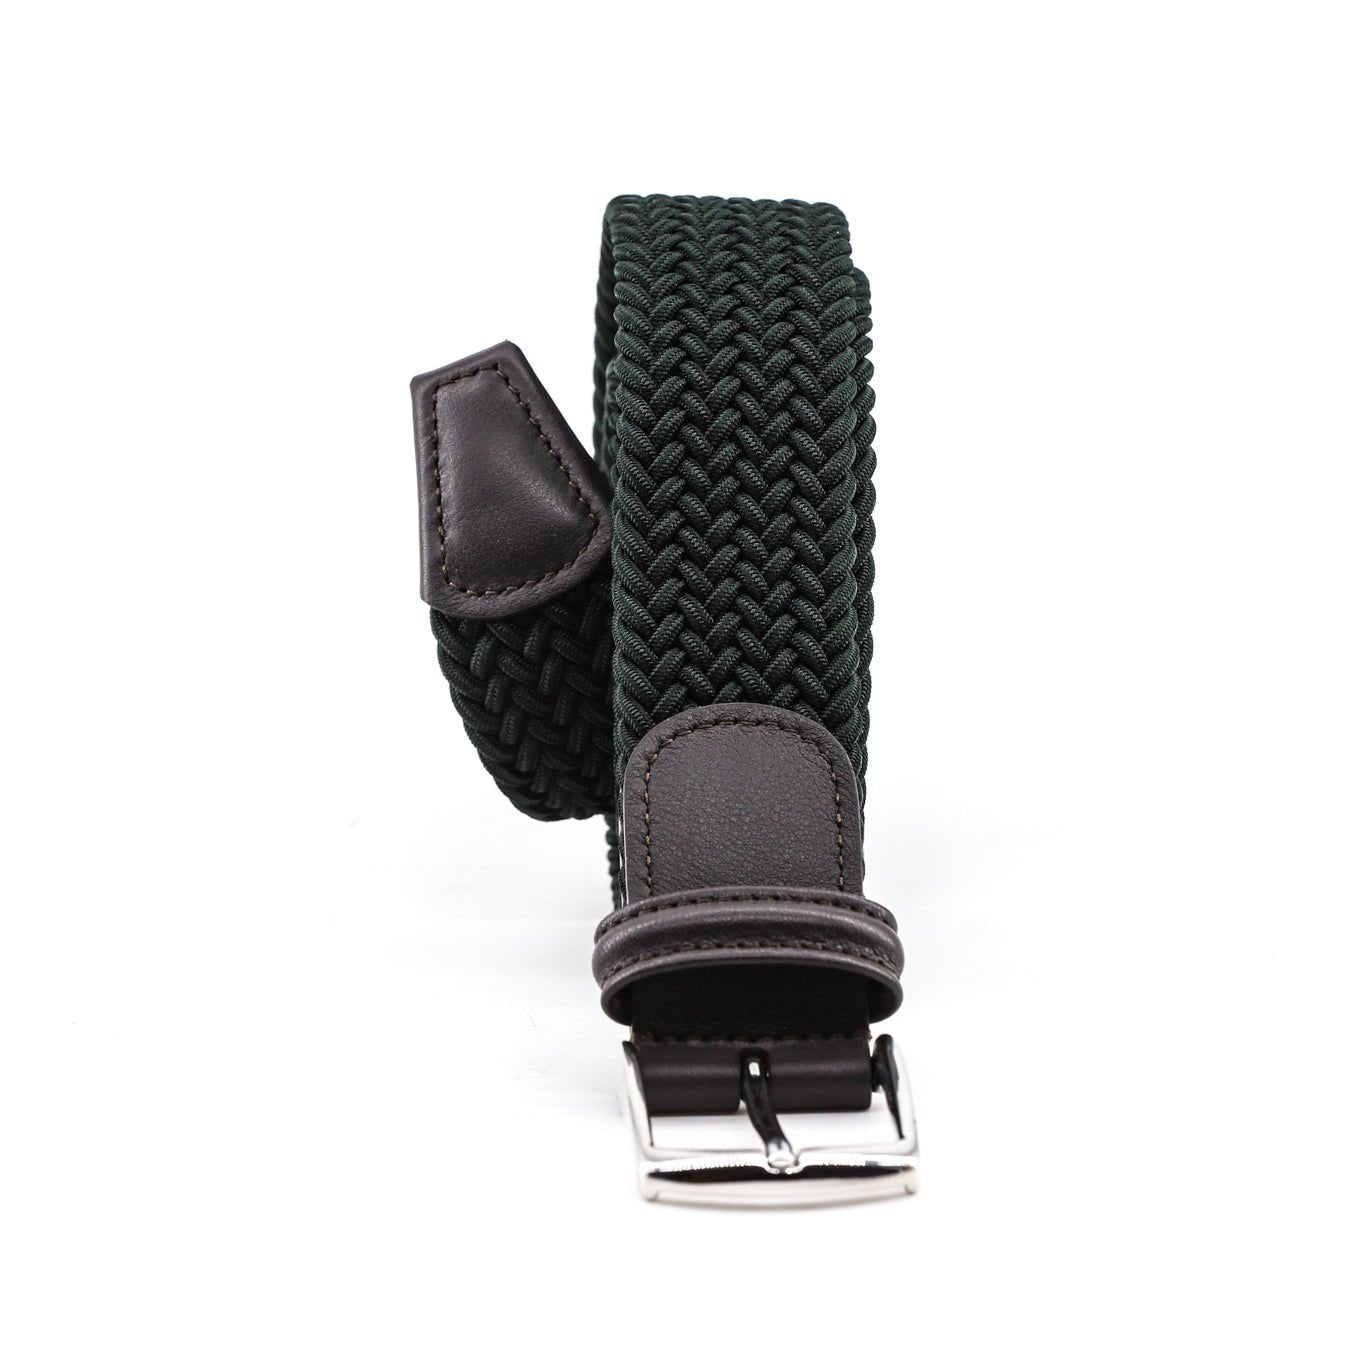 Cintura elasticizzata dark green rifinita moro Monsieur - MONSIEUR